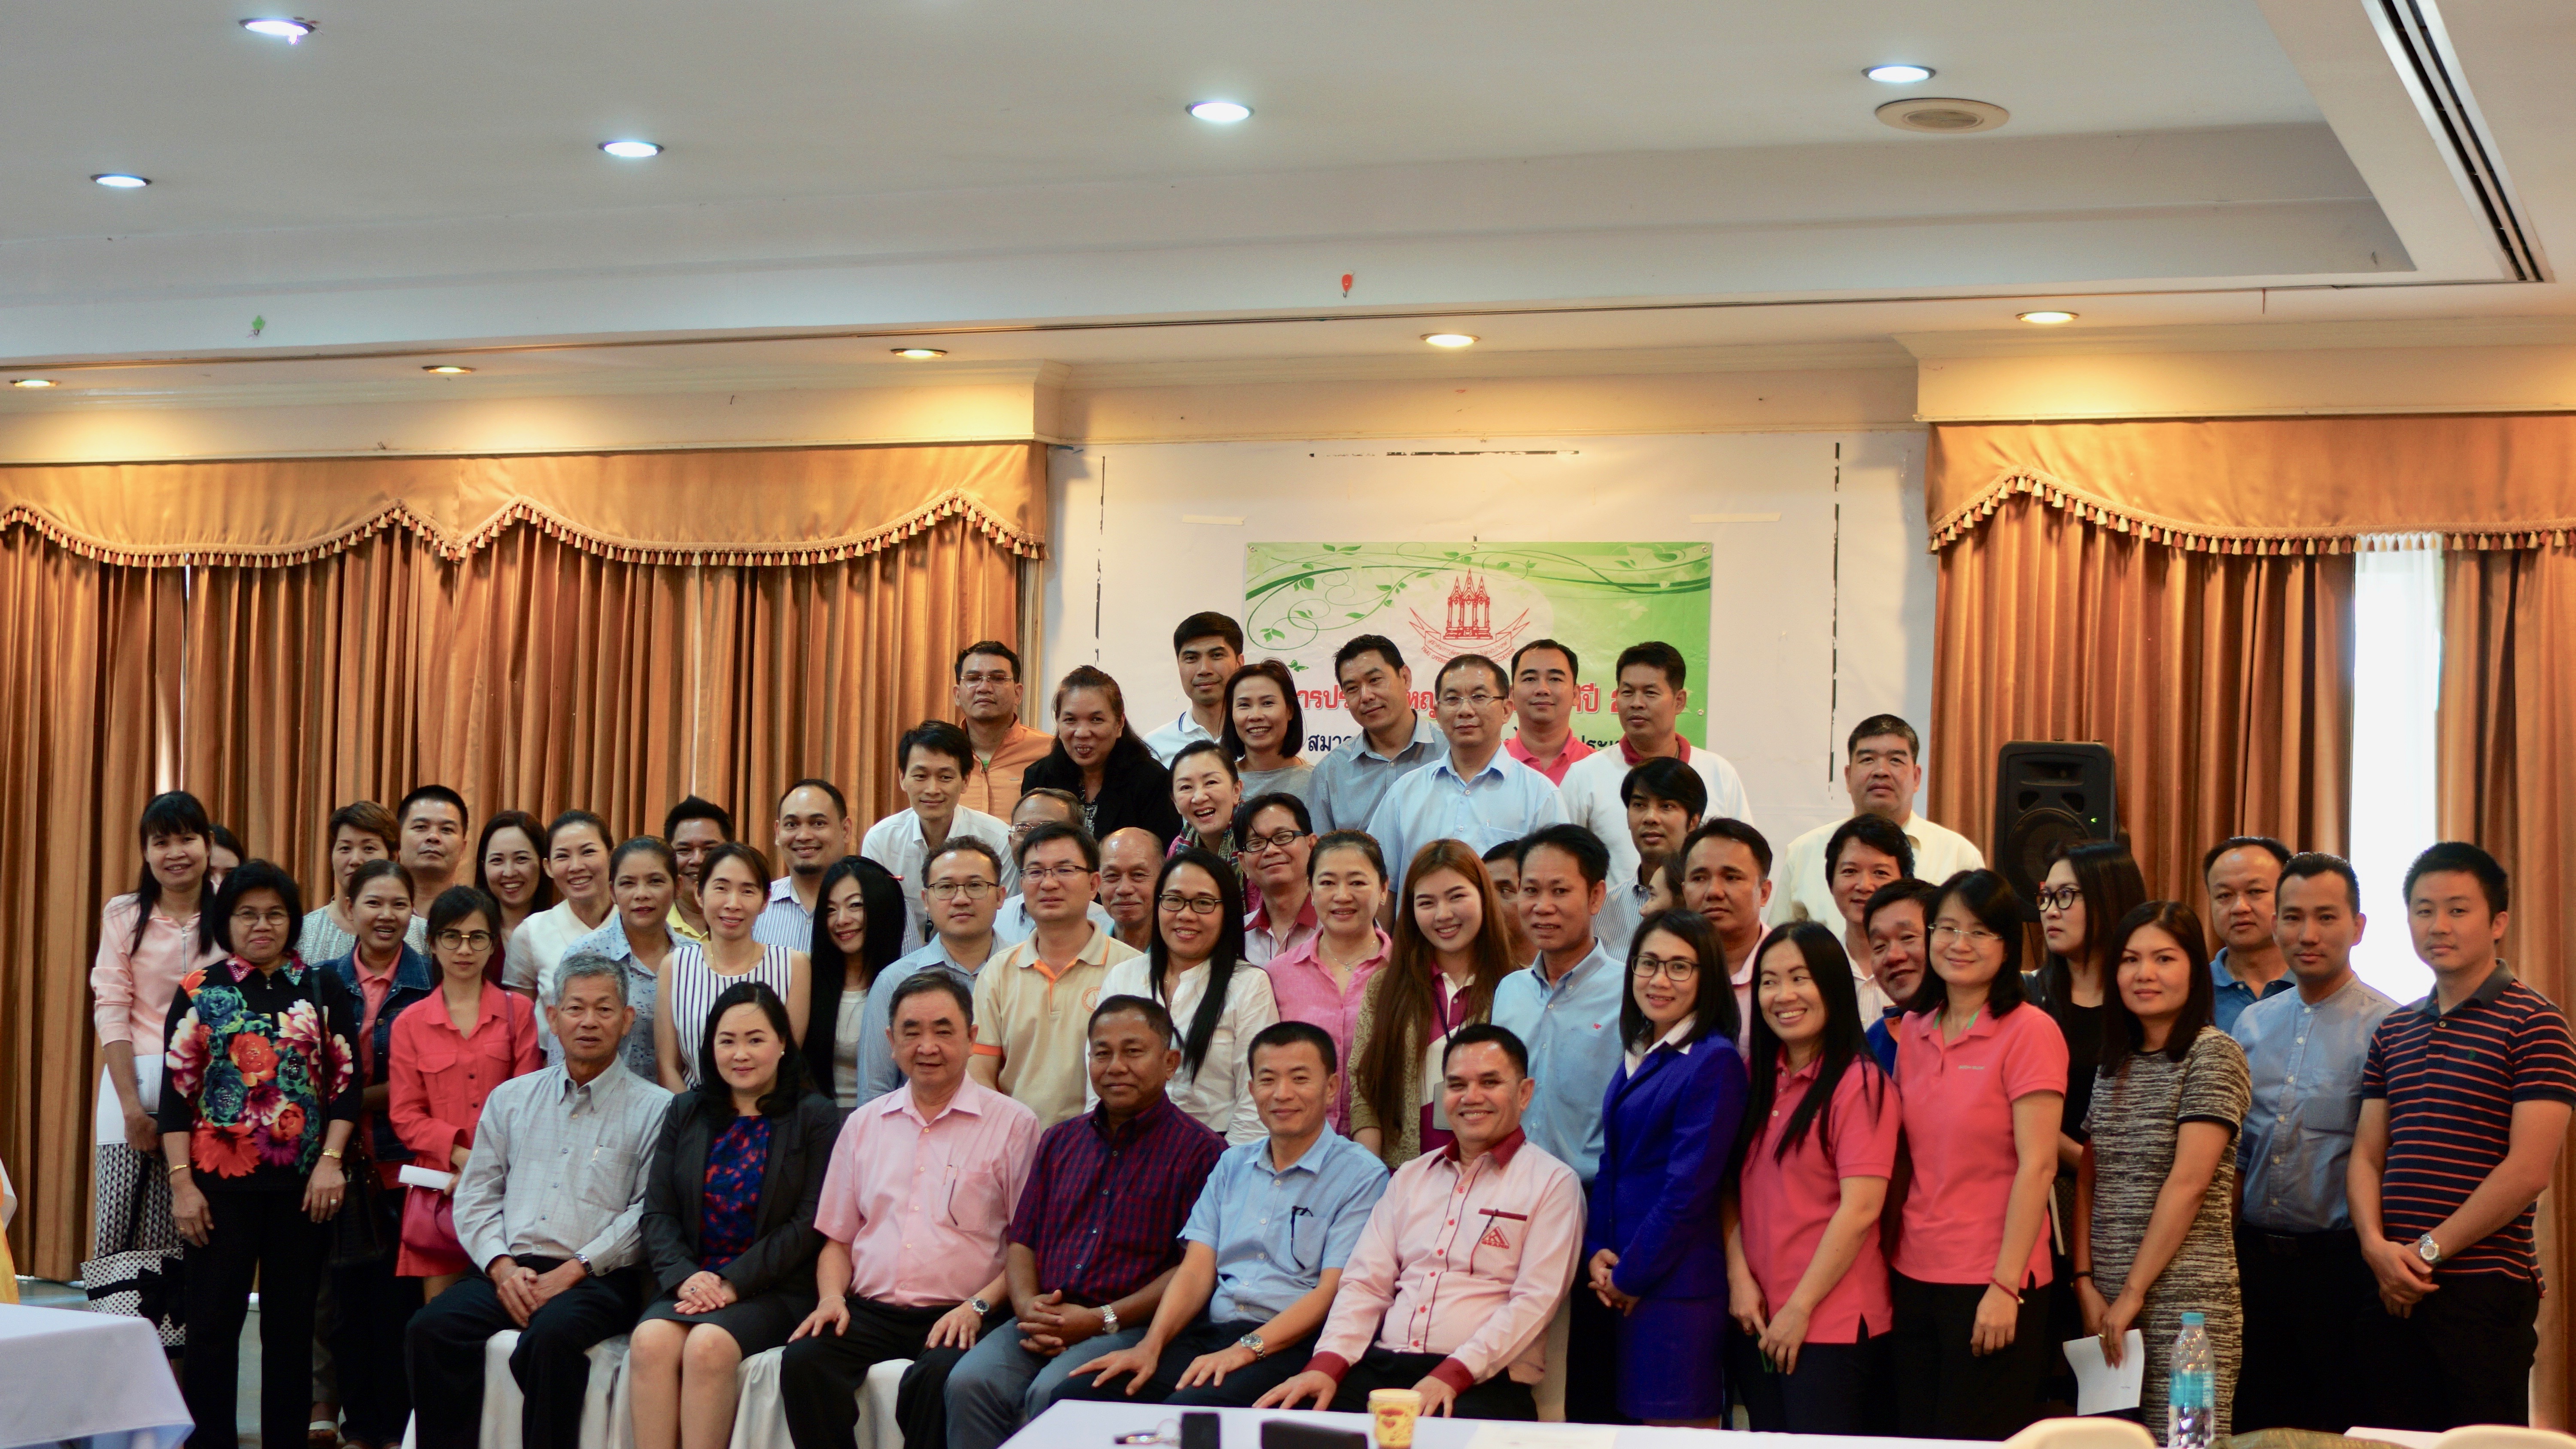 การประชุมสามัญประจำปี 2559 - สมาคมการจัดหางานไทยไปต่างประเทศ